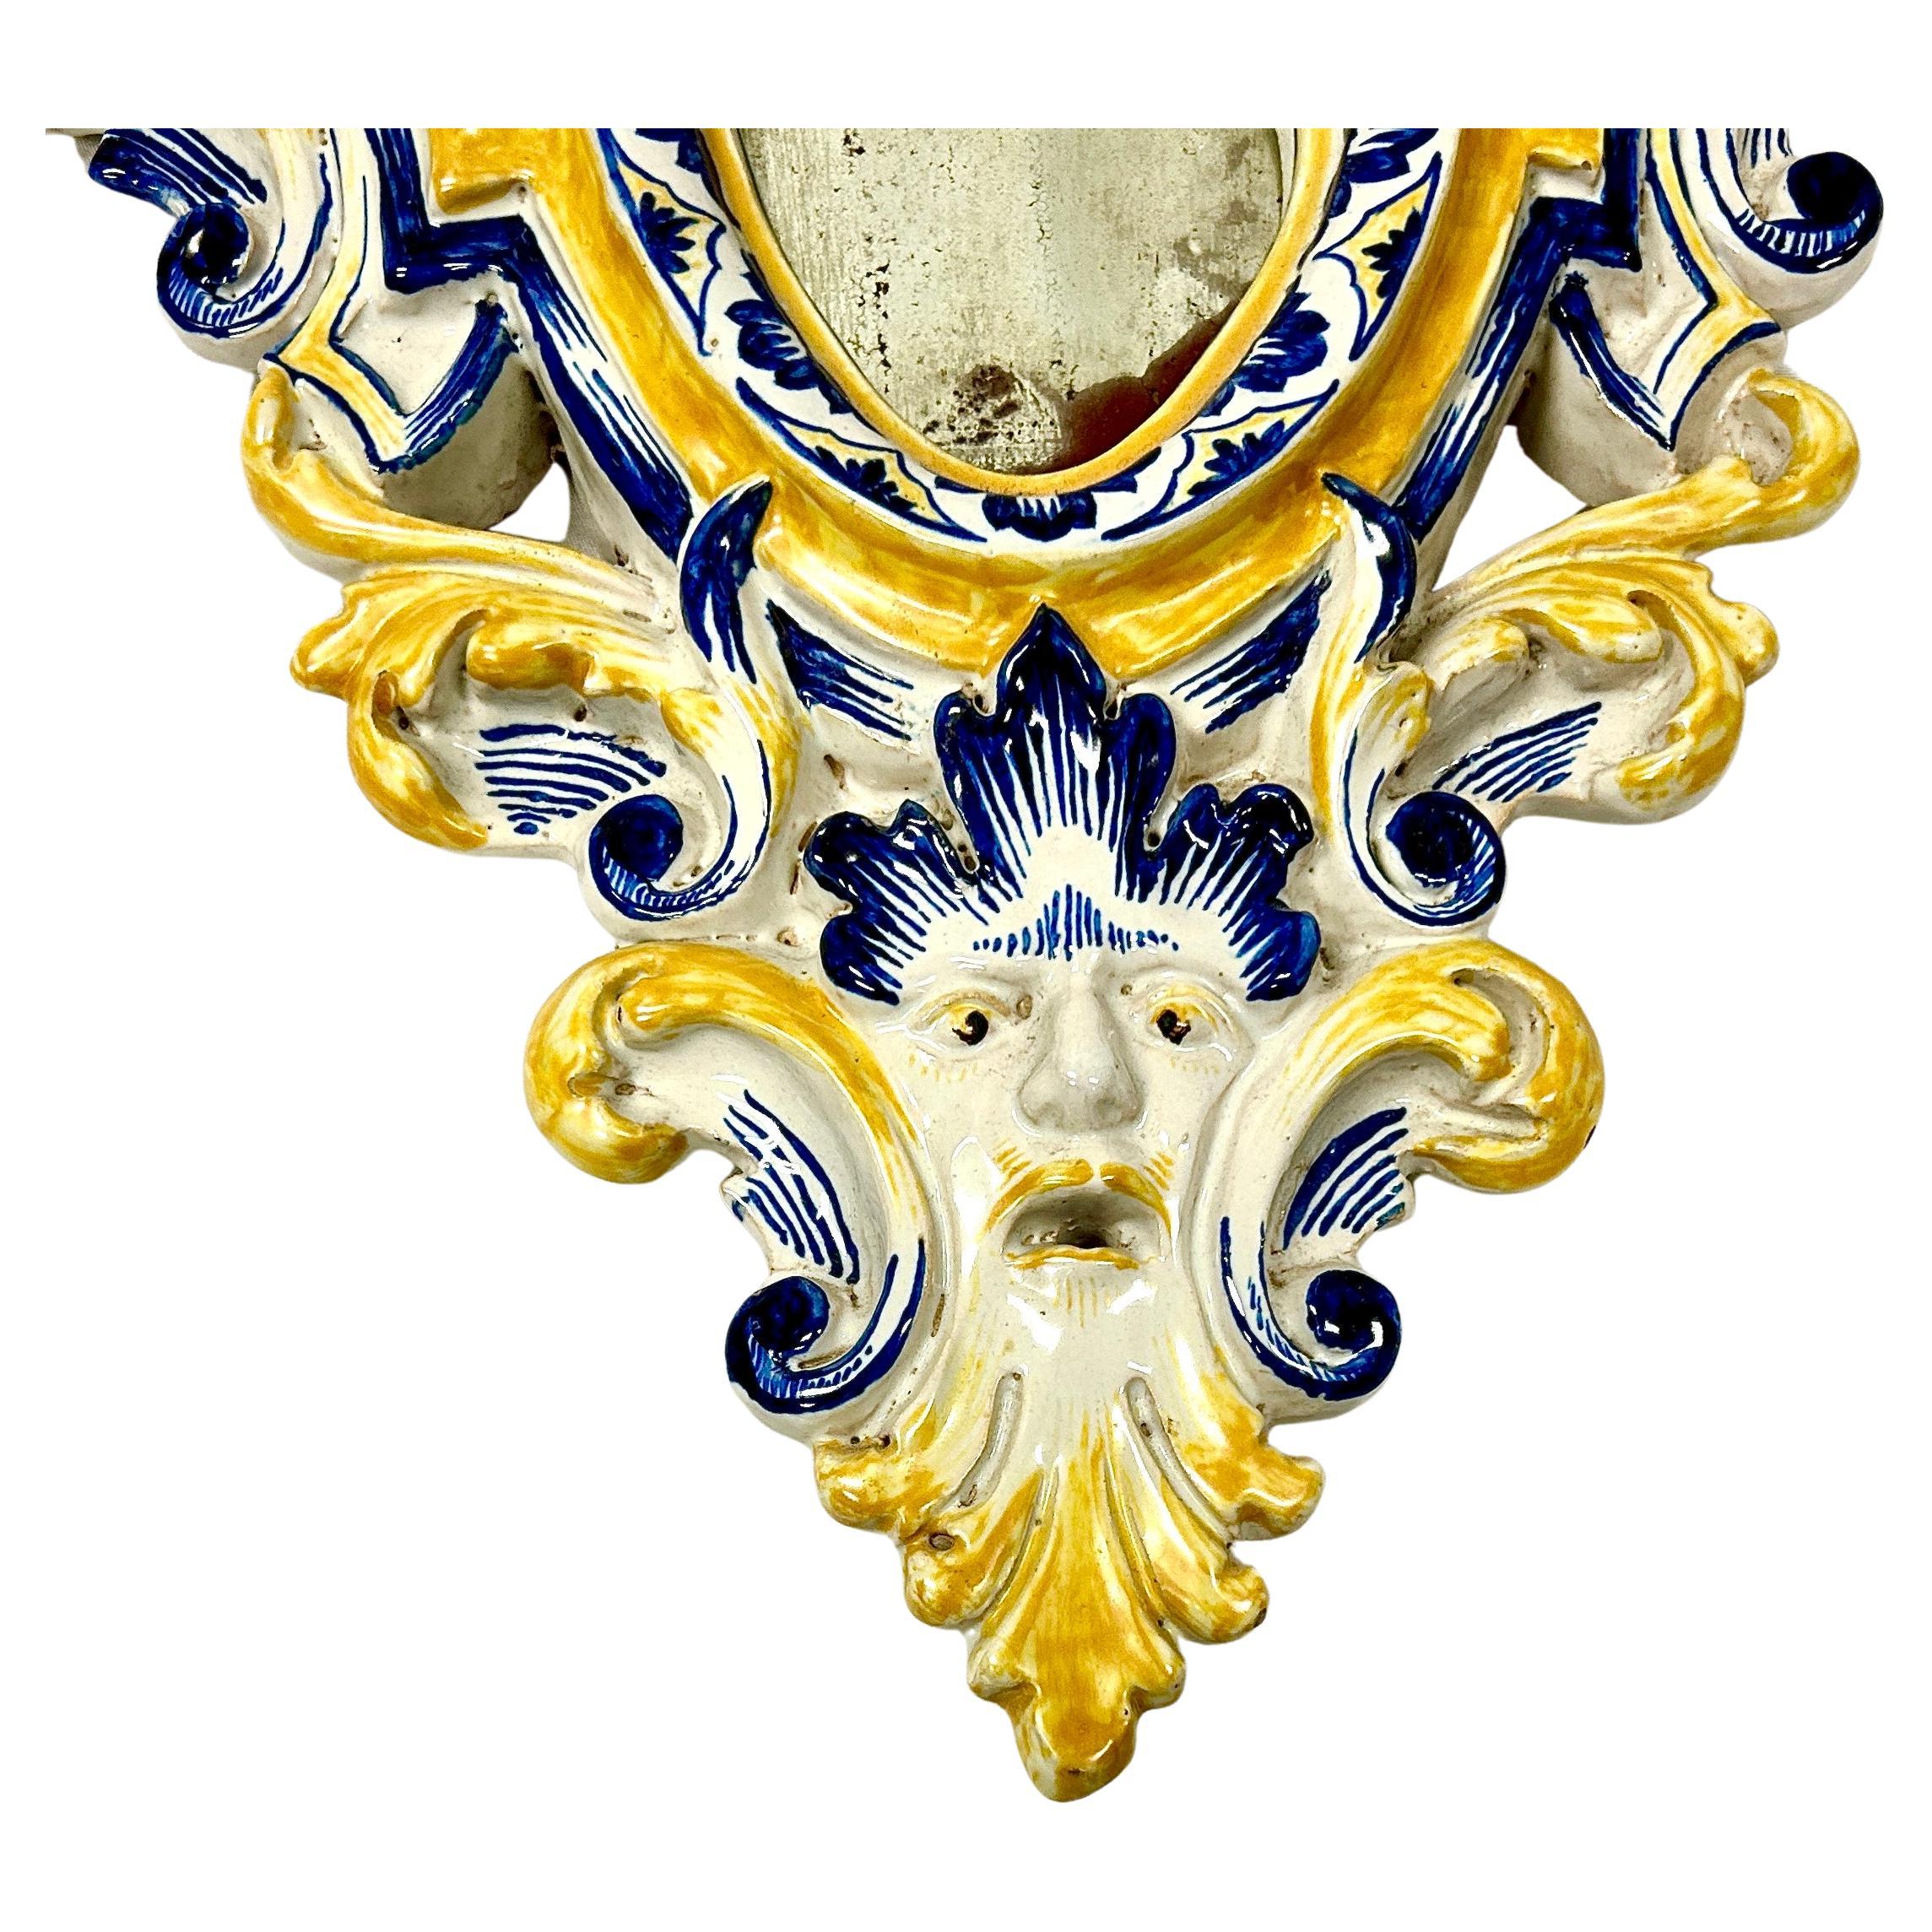 Feines Paar italienischer Majolika-Spiegel aus dem 19. Jahrhundert mit Glasur. Die Spiegel sind handgefertigt und in den Farben Weiß, Gelb und Blau gehalten, mit geschnitzten Rändern, jeweils mit einer bärtigen Maske versehen und mit Blumenspritzern